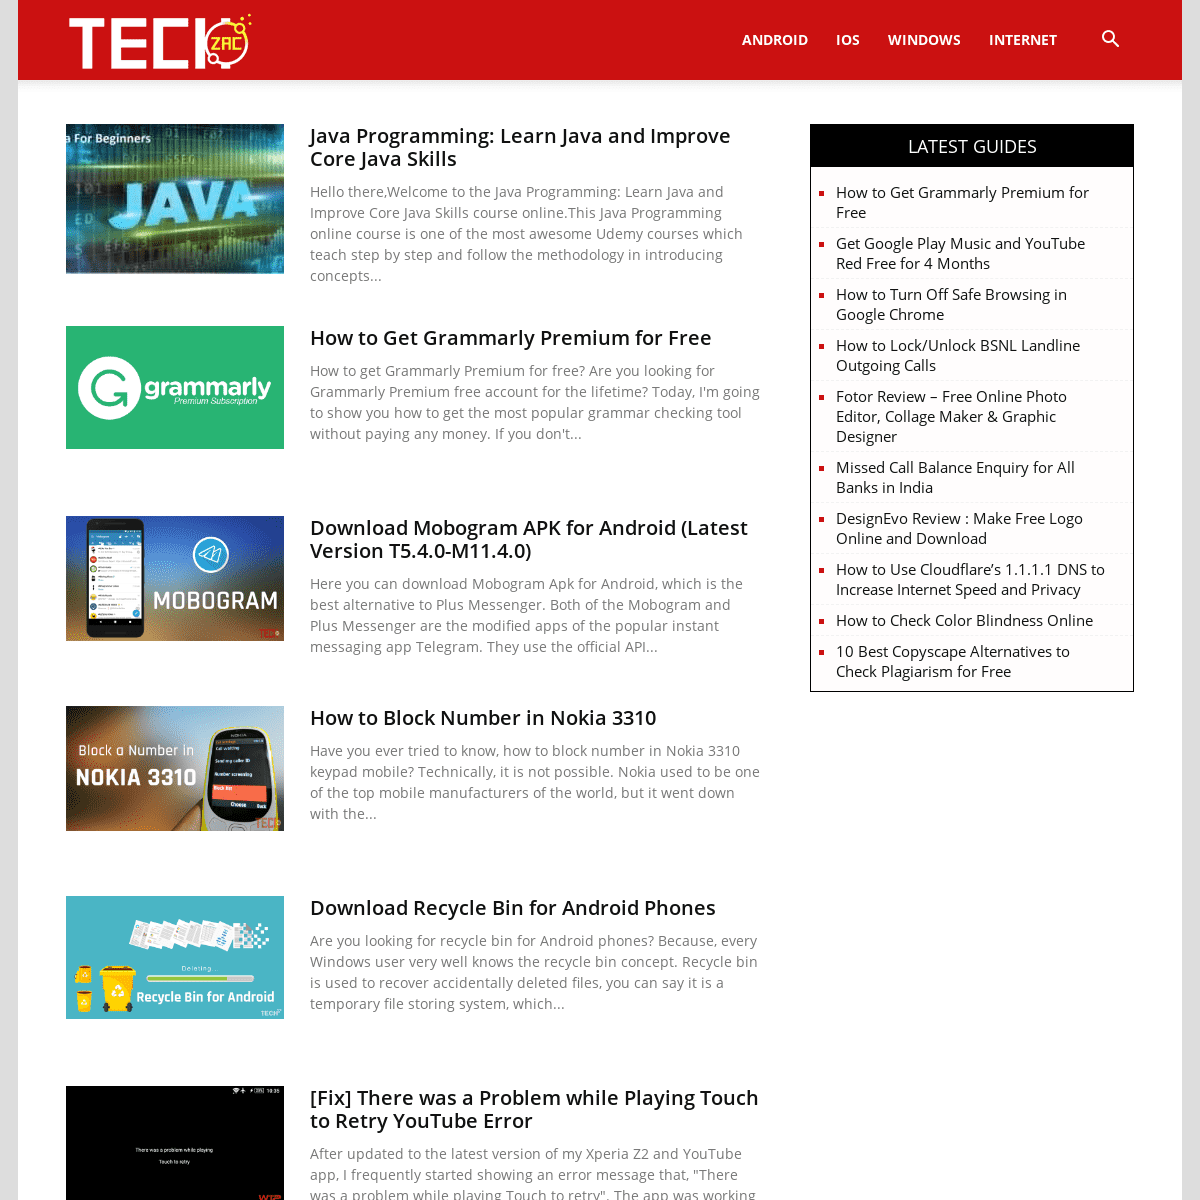 A complete backup of techzac.com